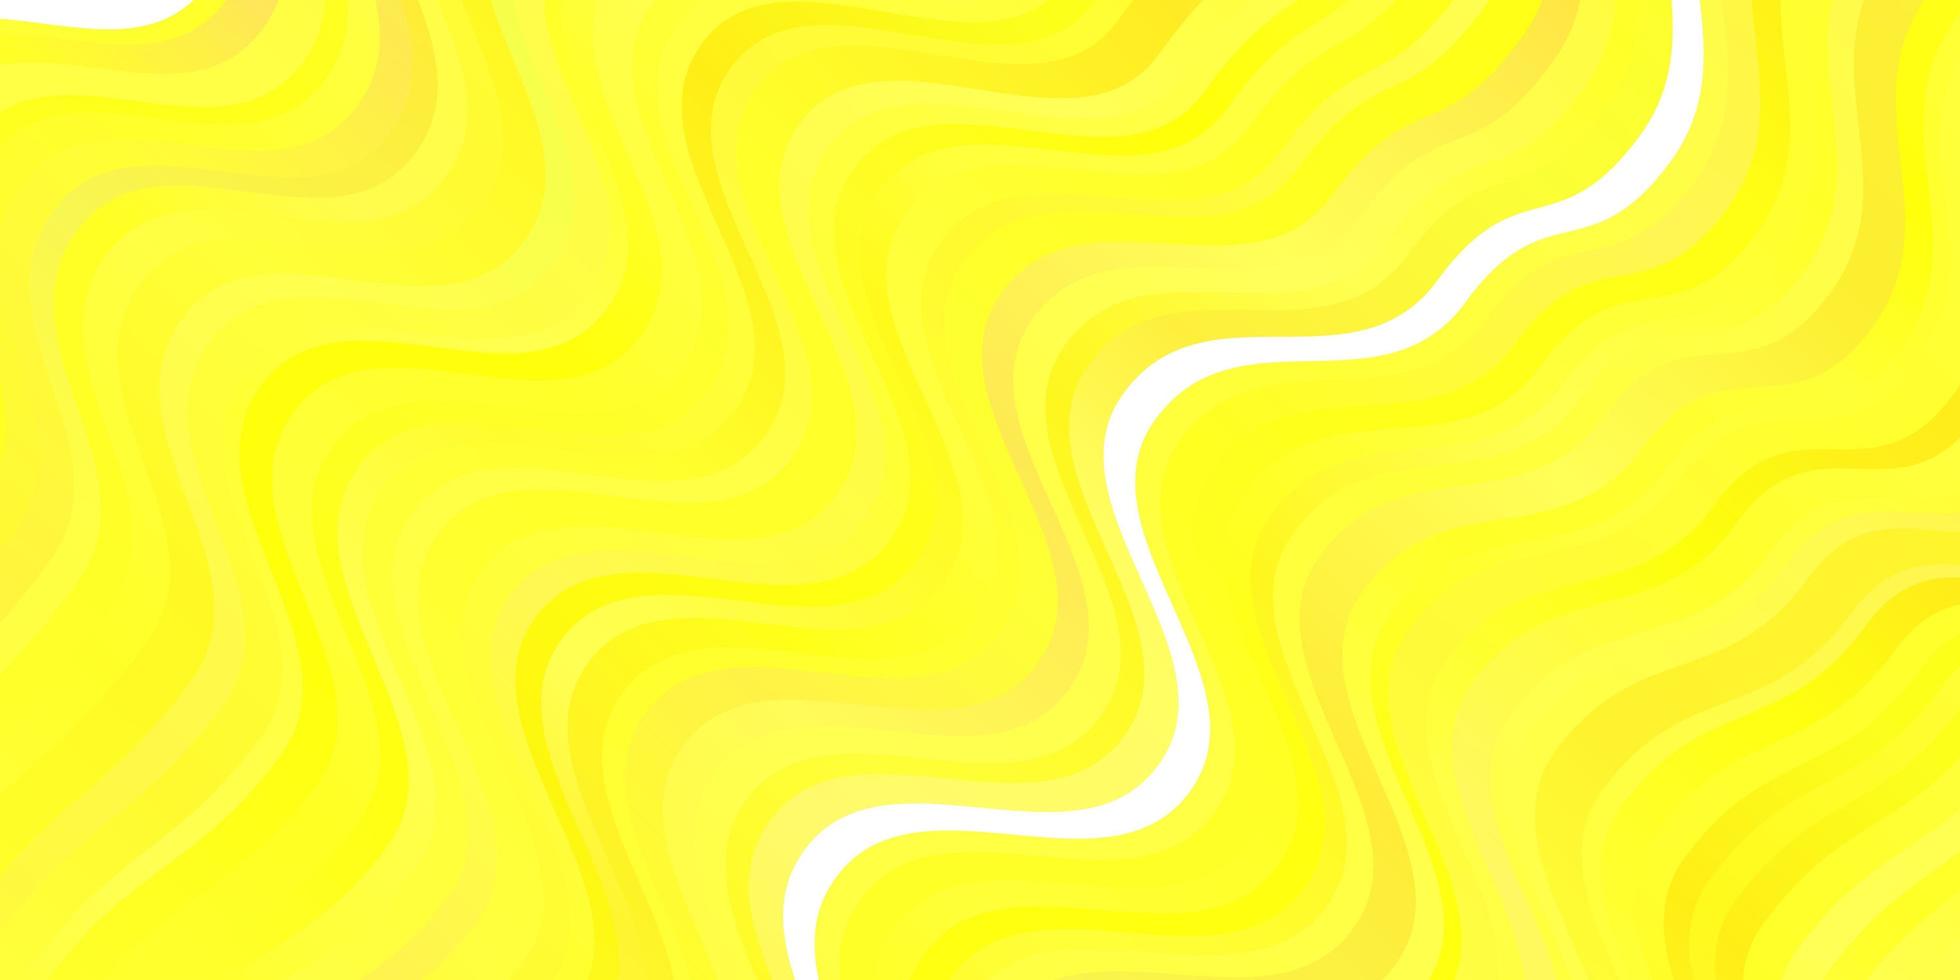 sfondo vettoriale giallo chiaro con curve